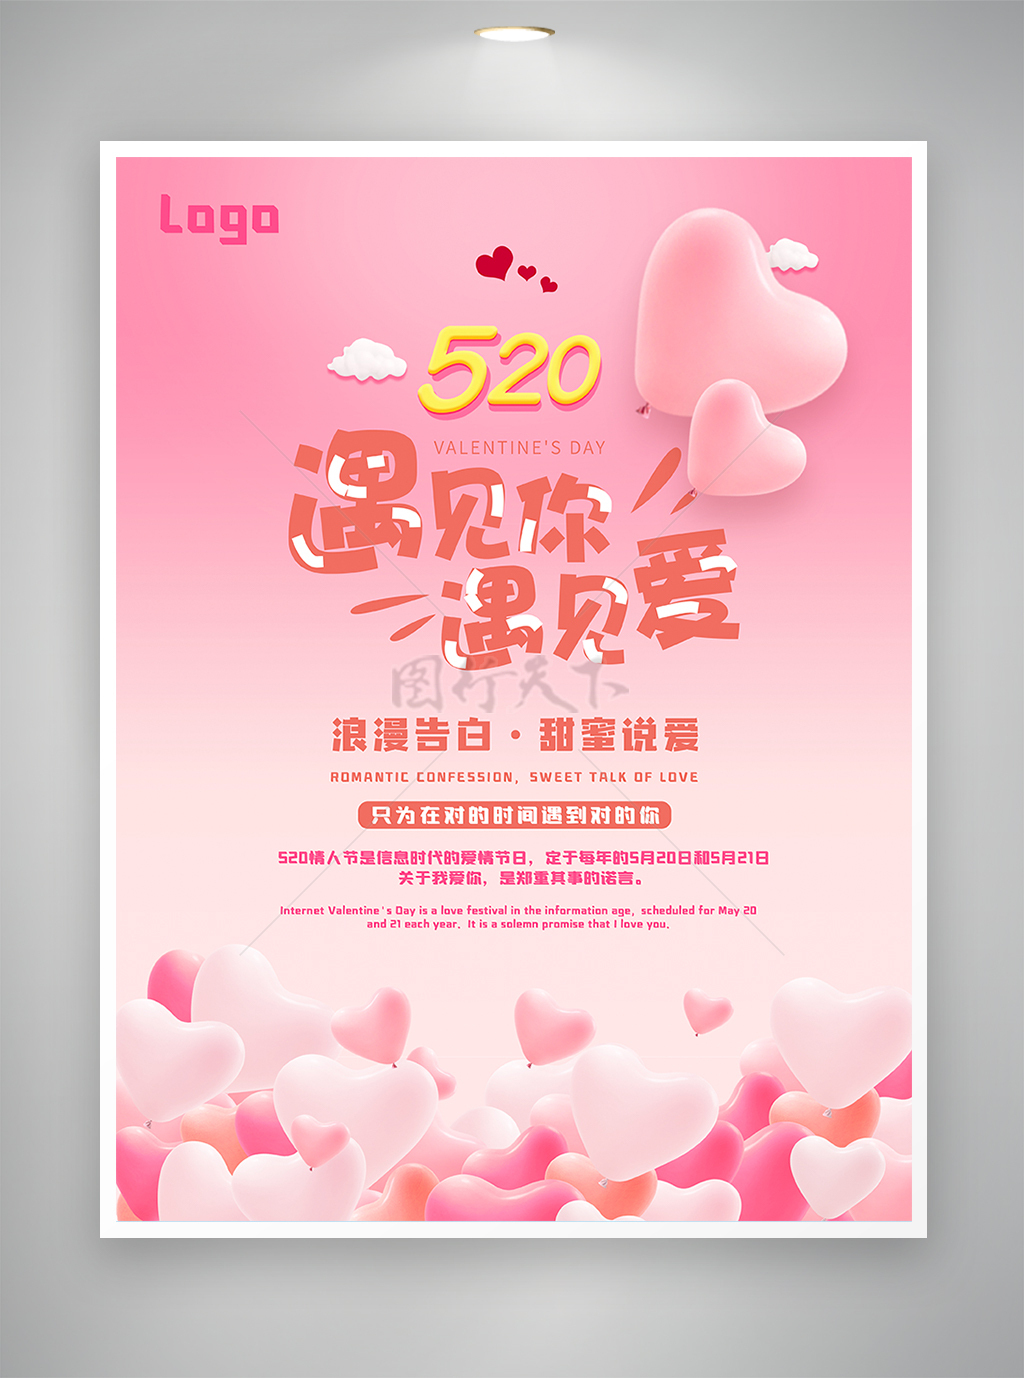 浪漫告白甜蜜说爱520情人节节日宣传海报